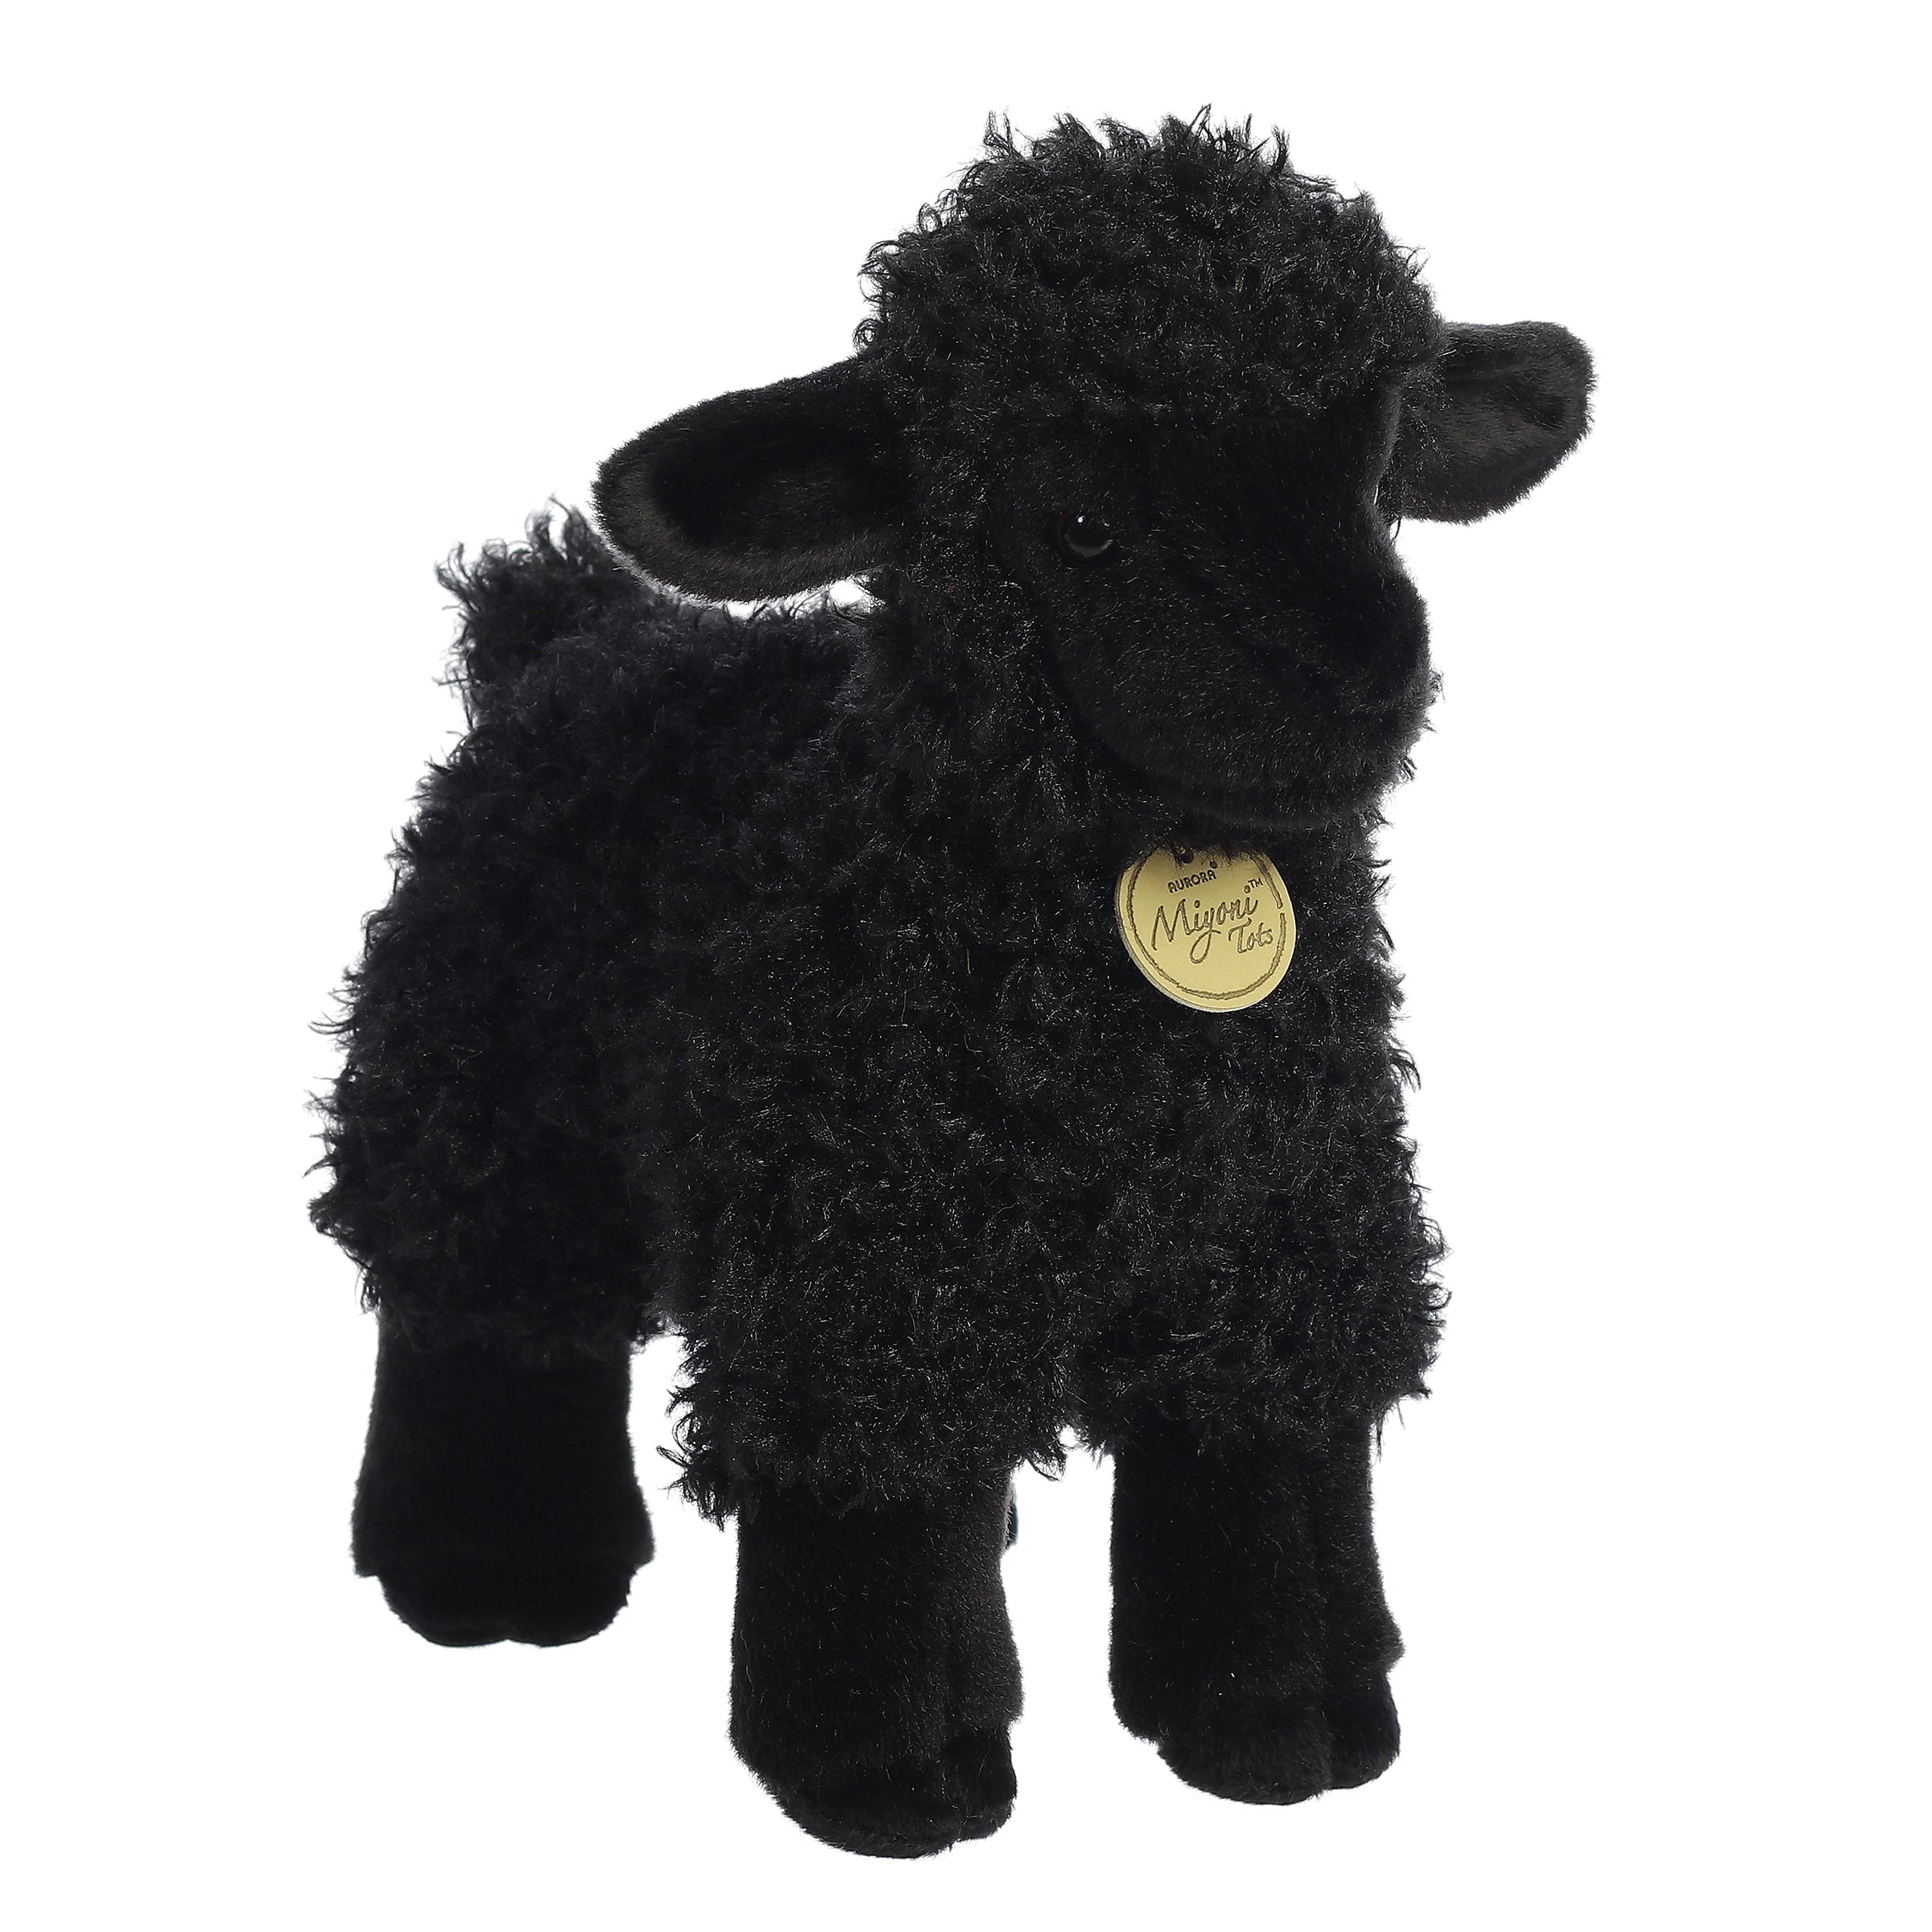 Miyoni Black Lamb Plush with curly black coat, lifelike eyes, eco-friendly, symbolizes nature's gentleness.